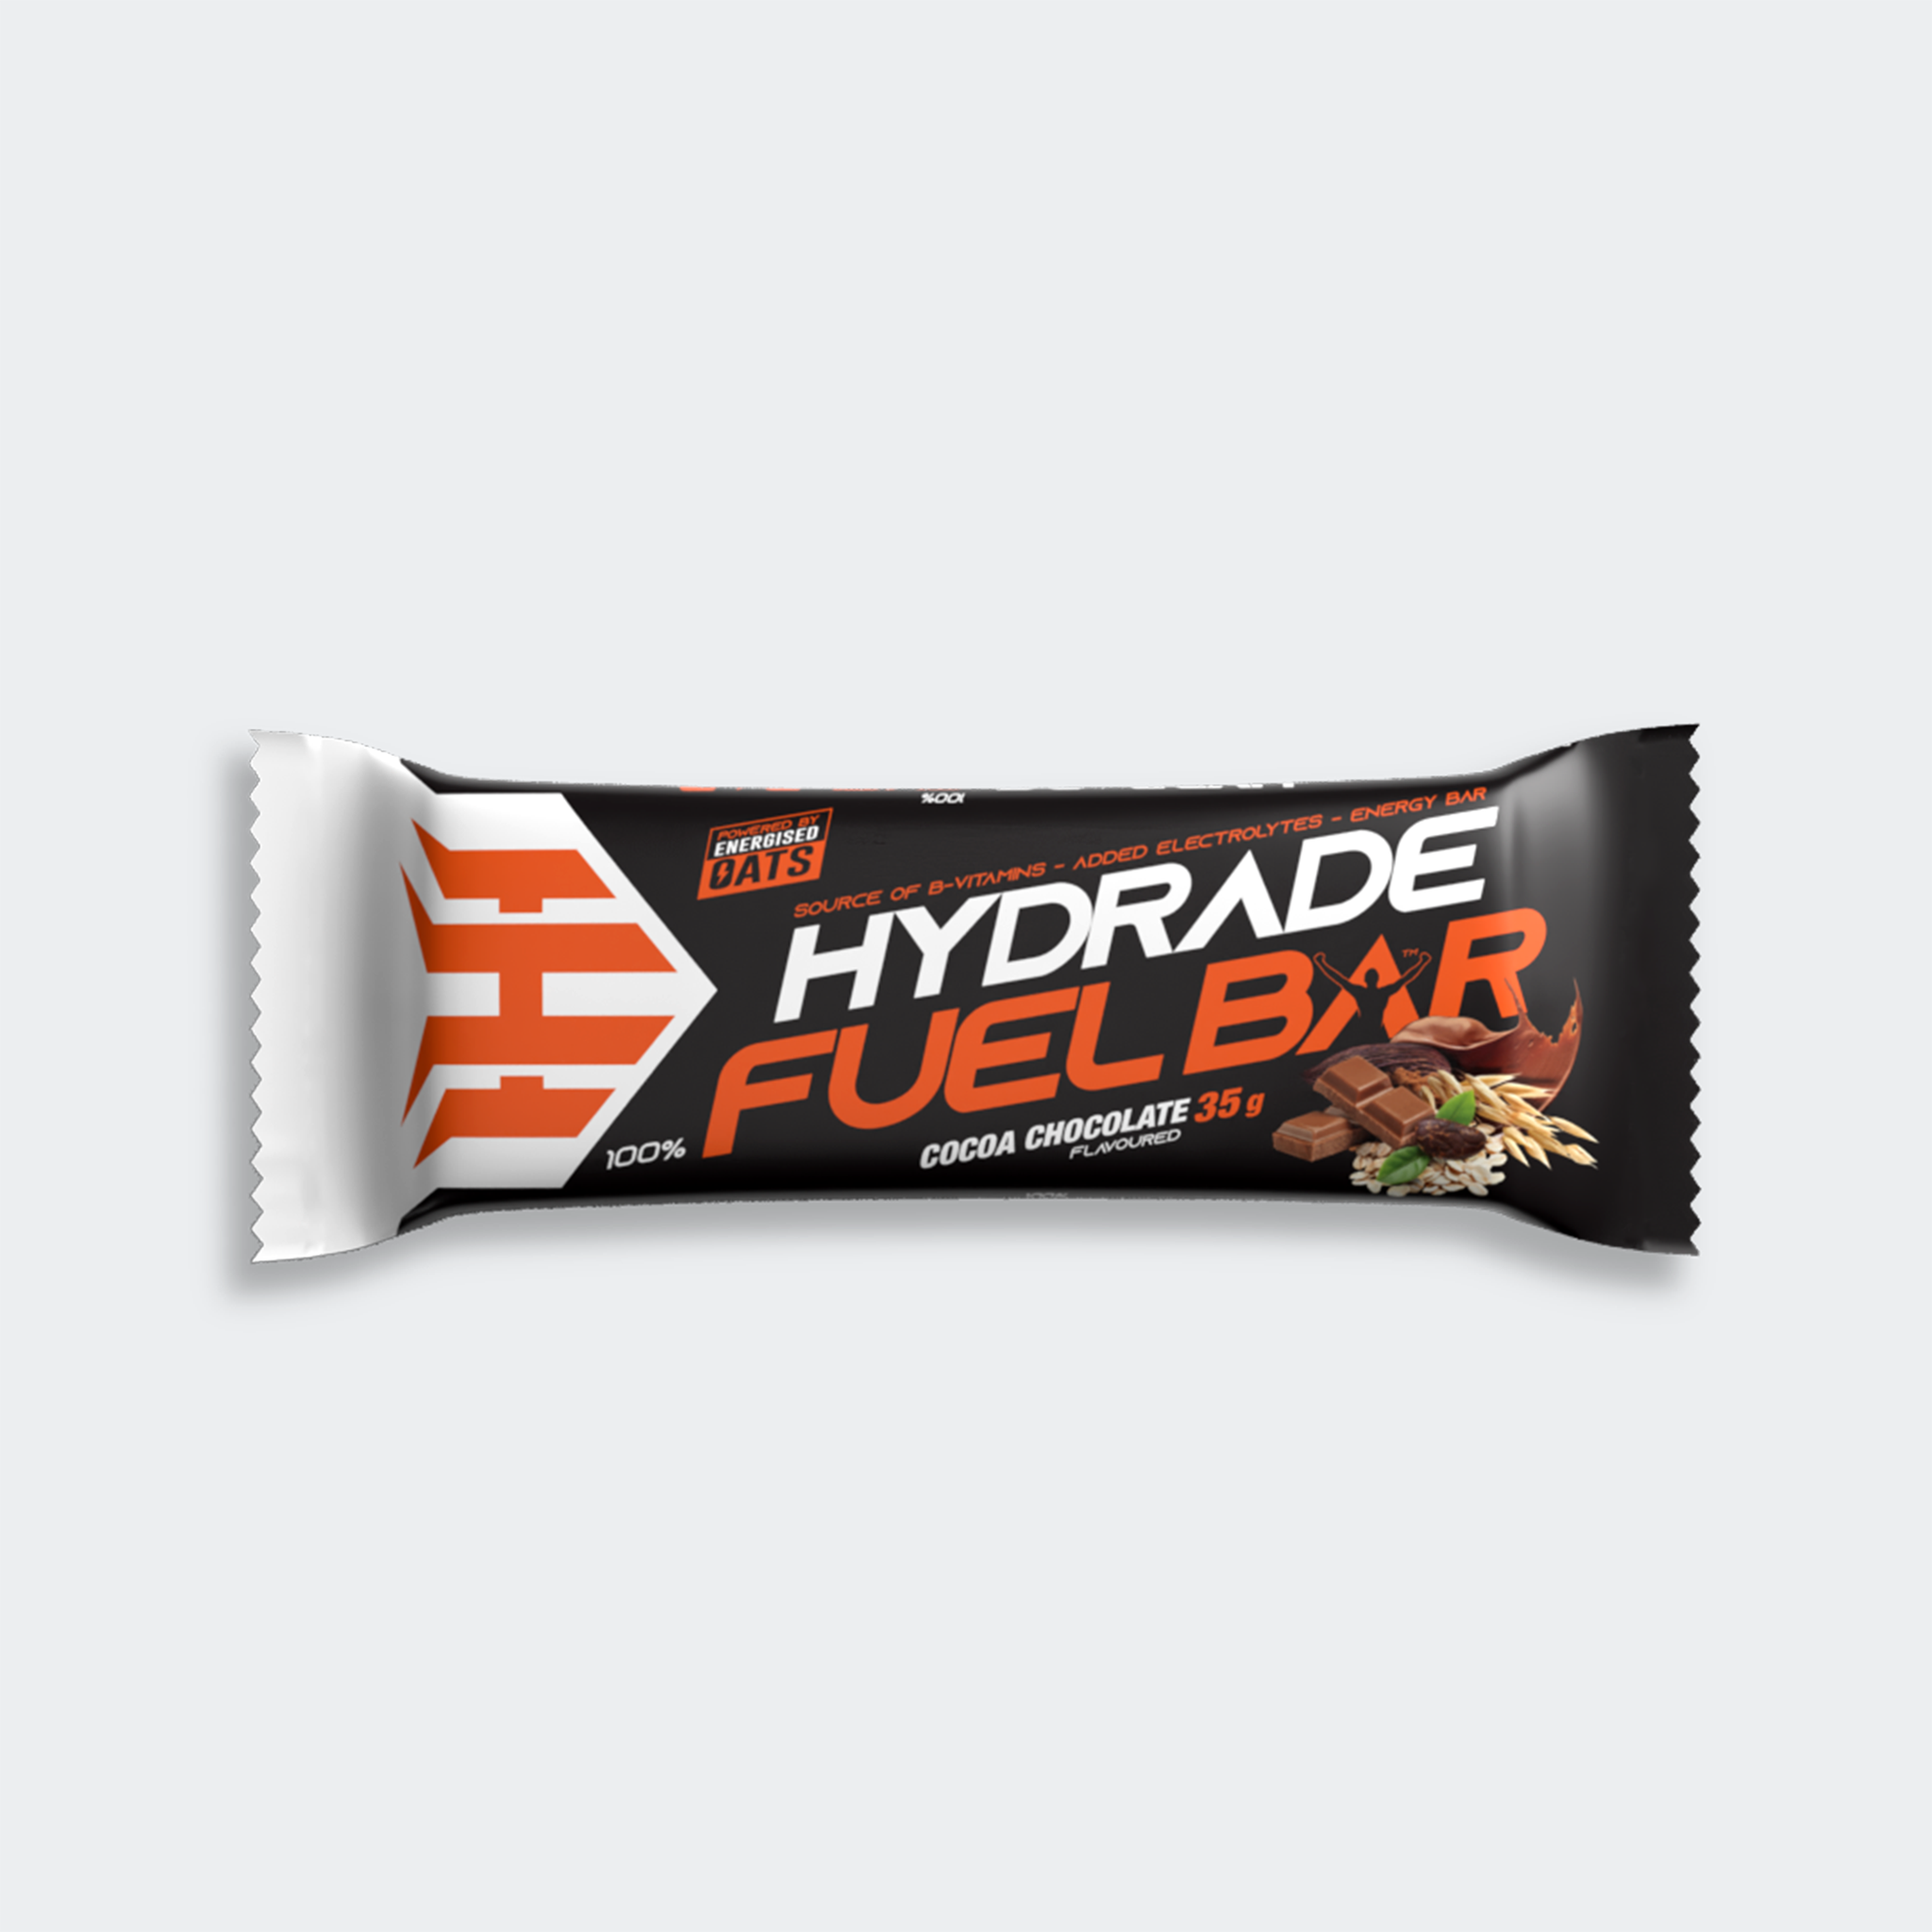 Hydrade Fuel Bar